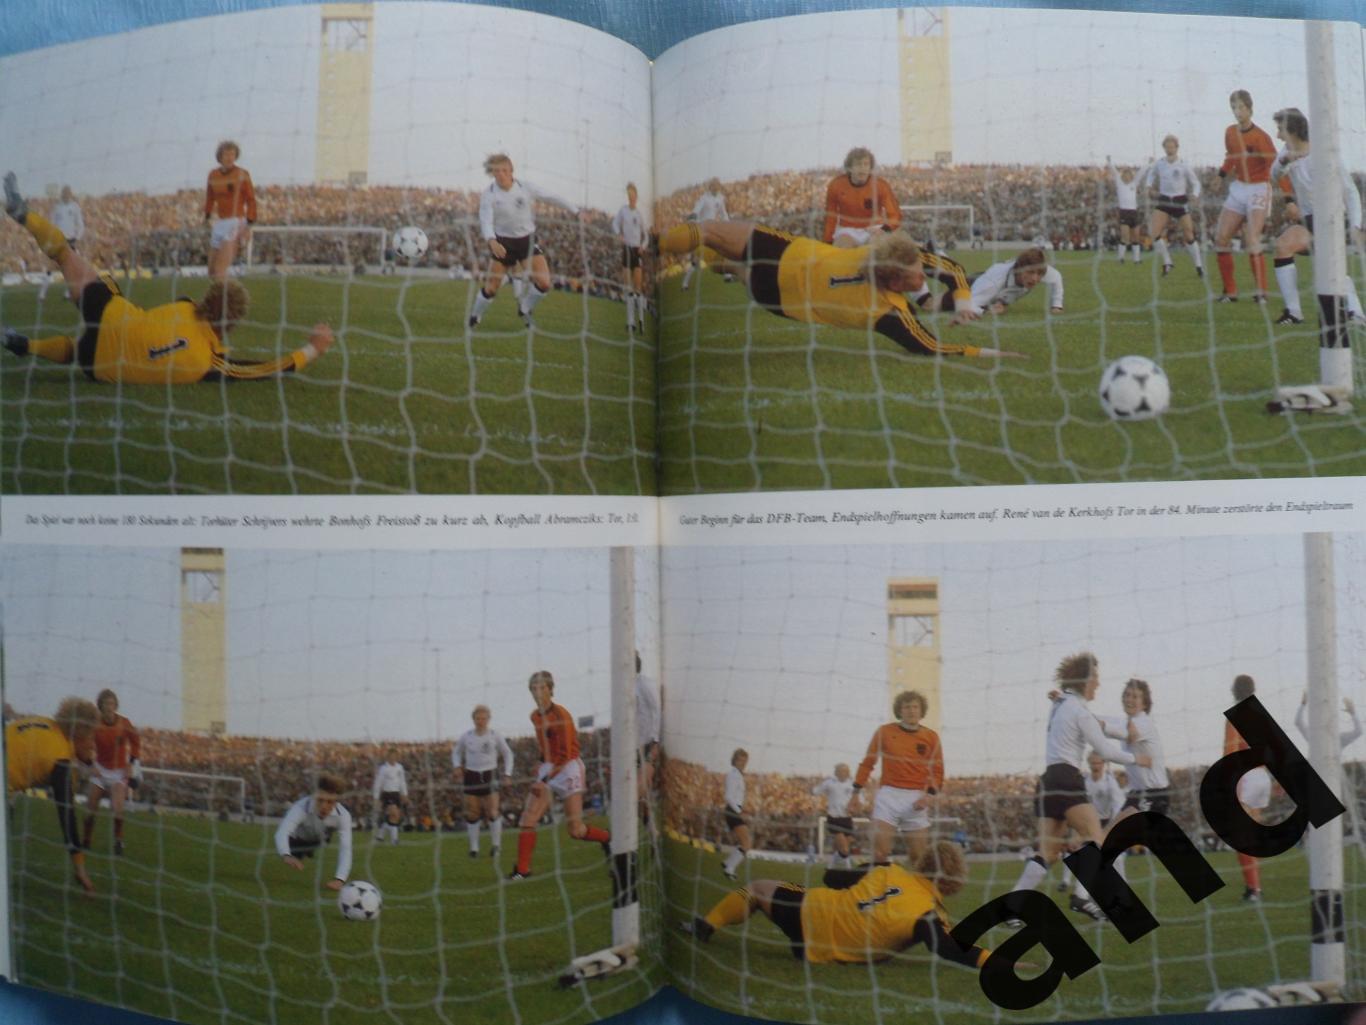 фотоальбом Чемпионат мира по футболу 1978 г. 3